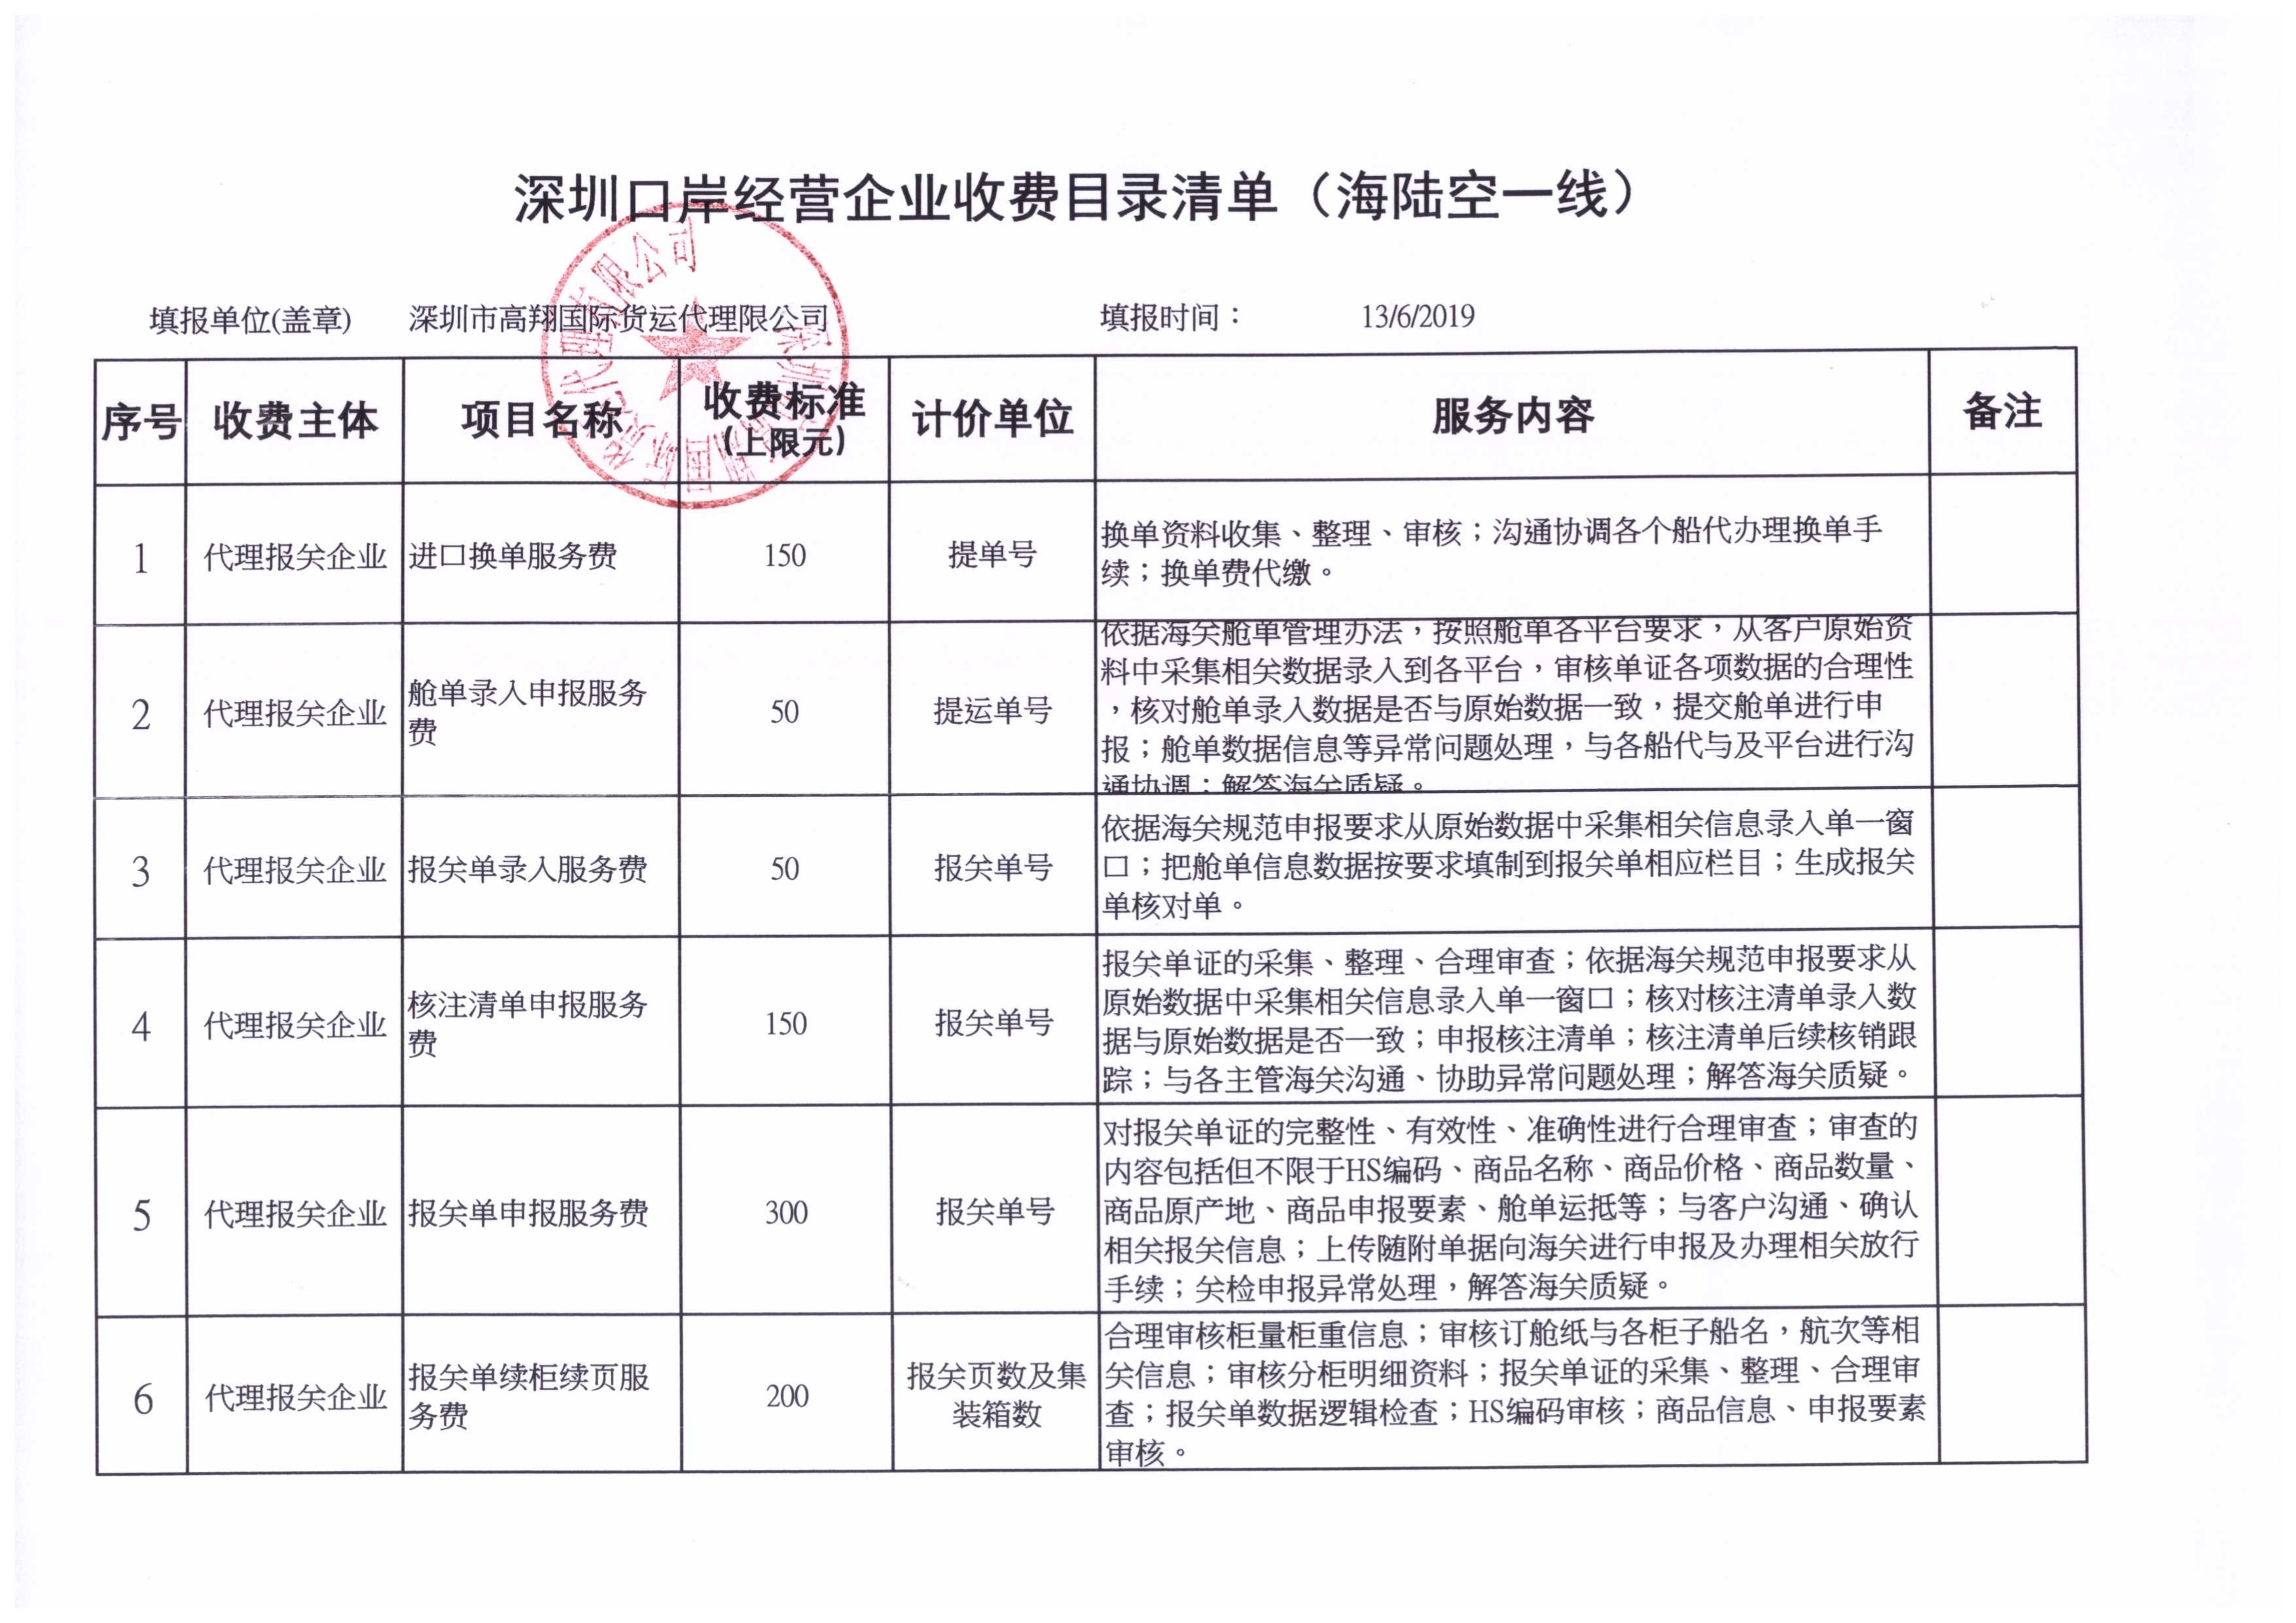 深圳市高翔国际货运代理有限公司收费目录清单_1.jpg